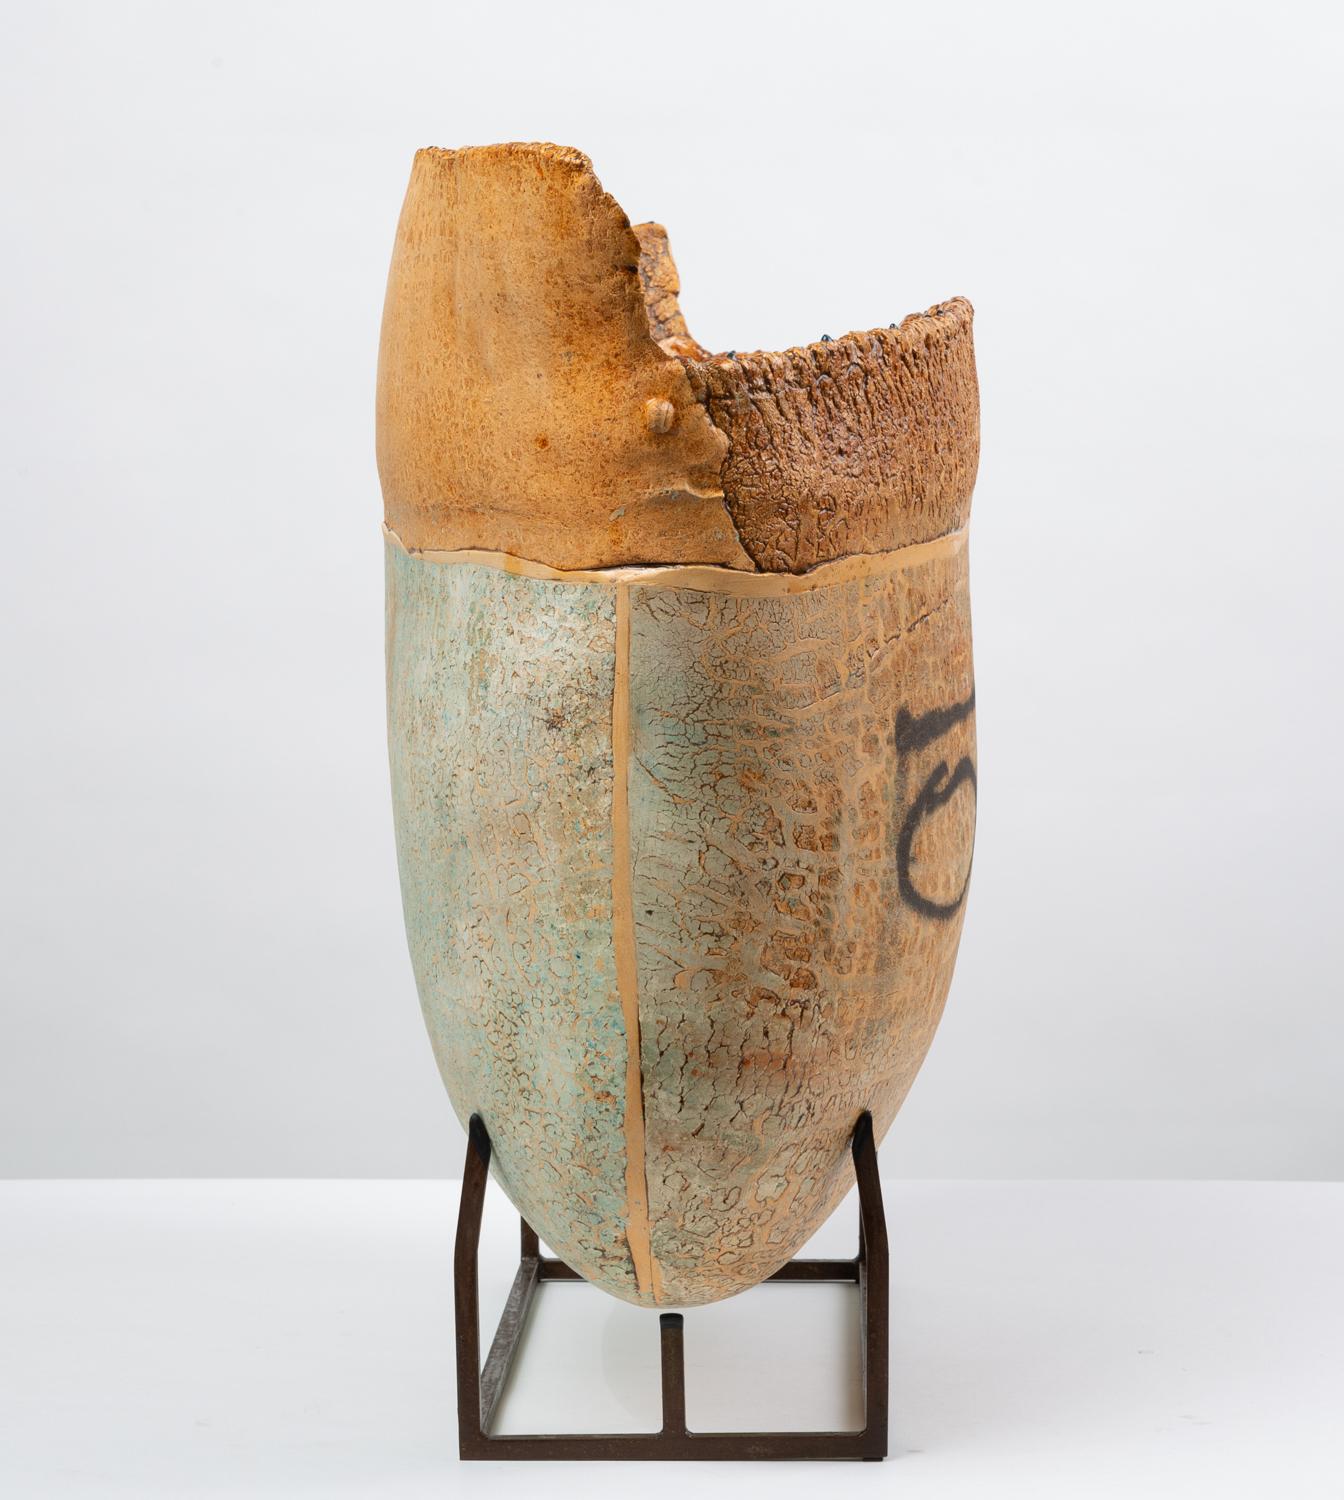 Glazed Ceramic Art Vessel with Mount by Jim Kraft